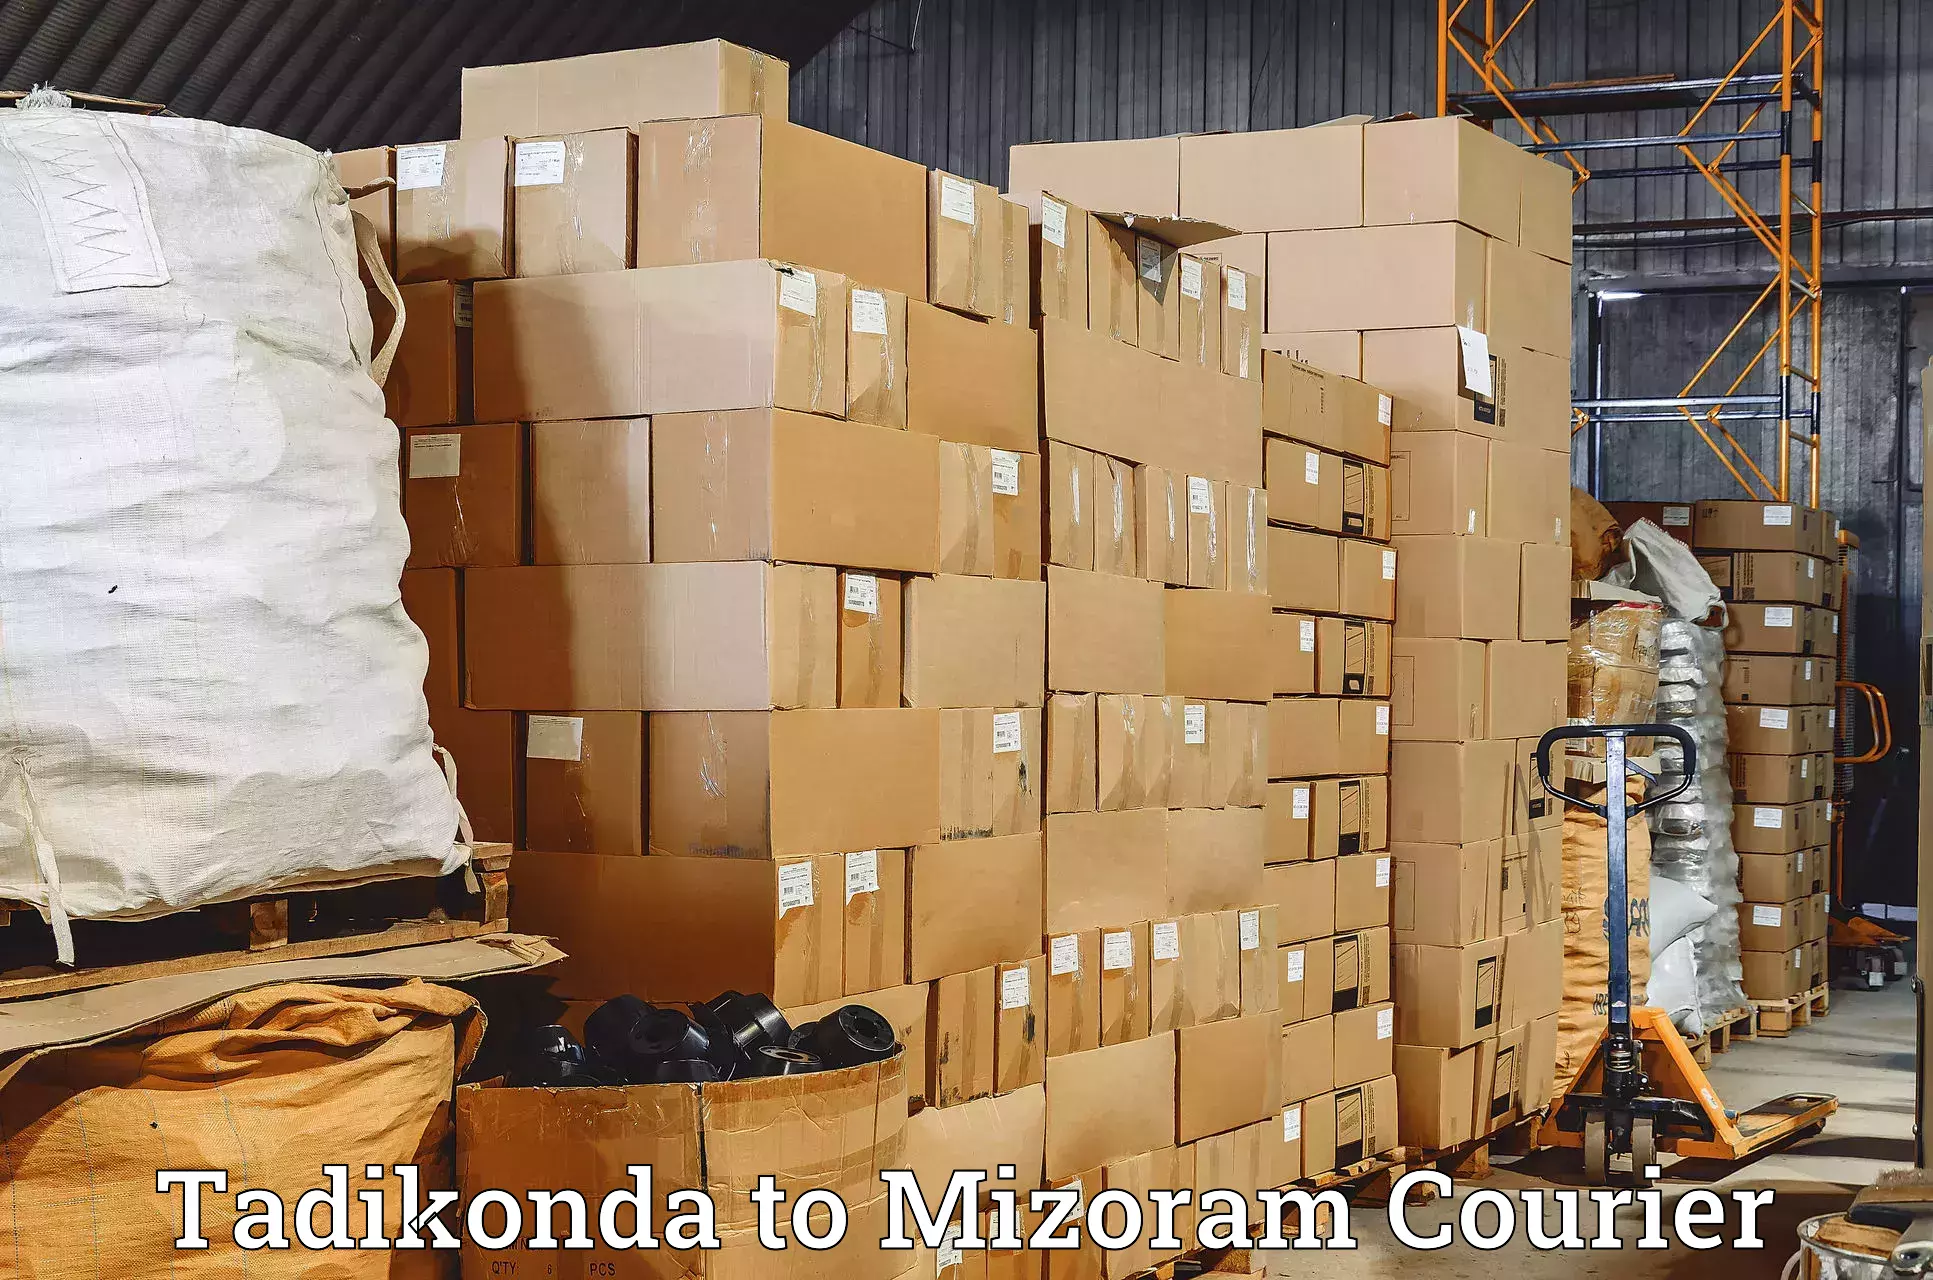 24/7 courier service Tadikonda to Mizoram